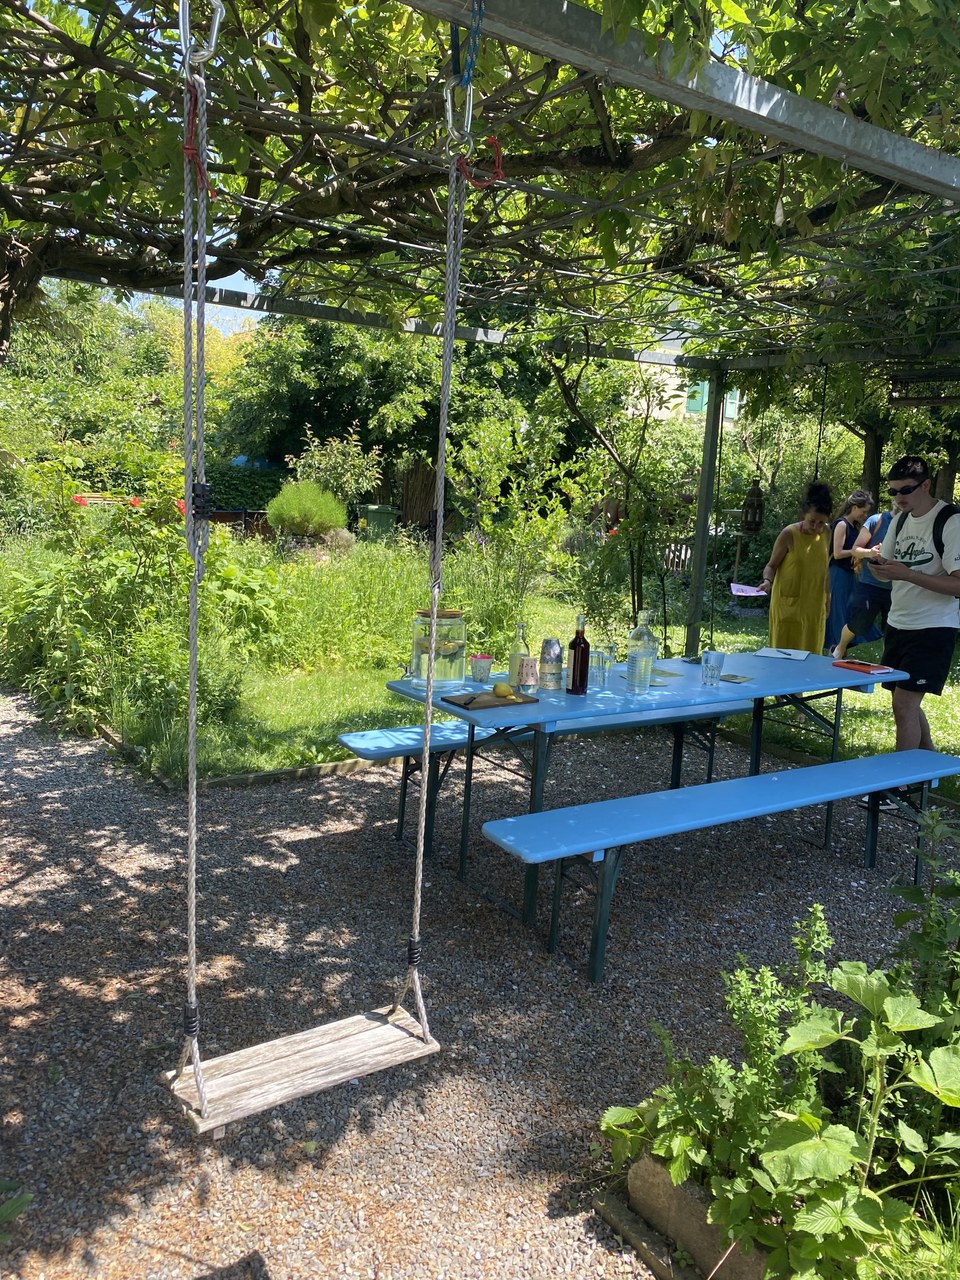 Schaukel im Vordergrund, blauer Gartentisch und Bank im Mittelgrund und im Hintergrund sind Menschen am Sprechen und Essen zu sehen. Die Umgebung ist sehr grün und befindet sich in einem Privatgarten